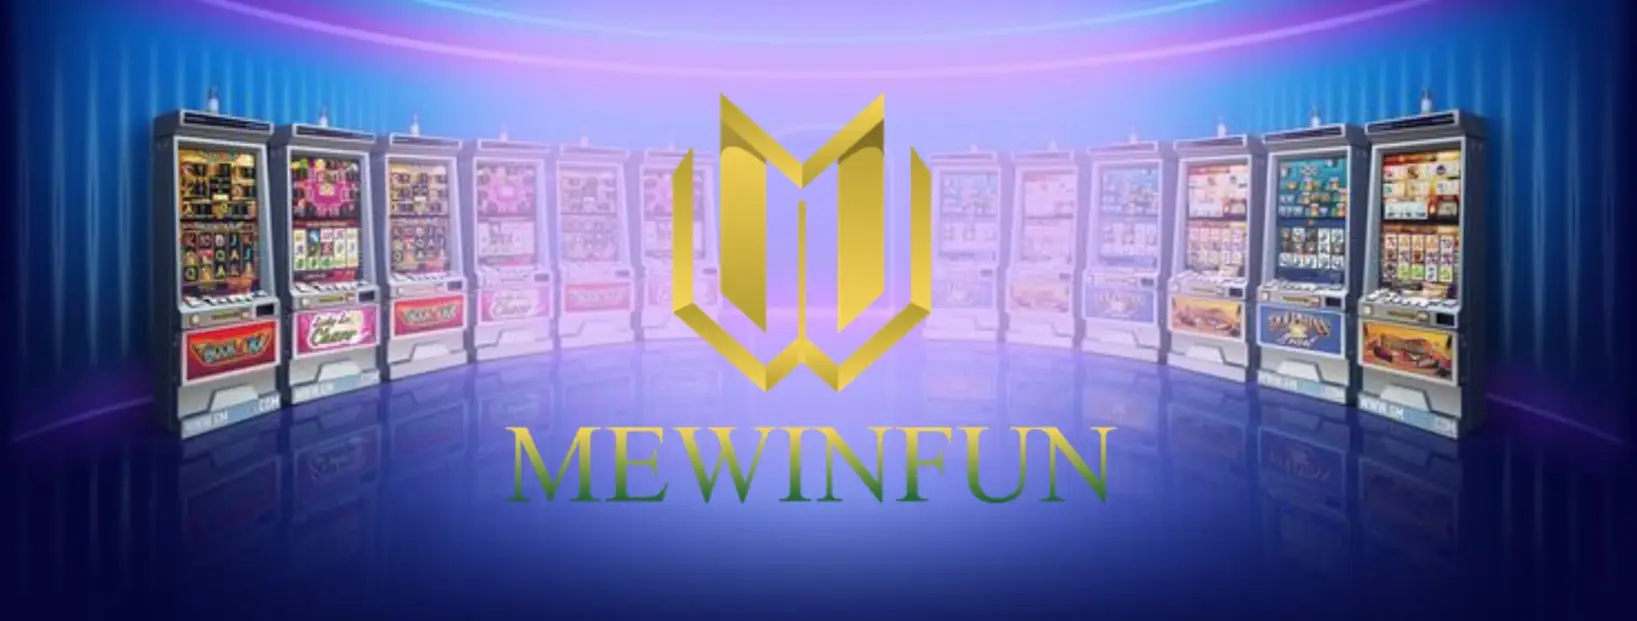 มาเข้าร่วมสนุกกับเกมสล็อตที่น่าตื่นเต้นกับ mewinfun สุดพิเศษ!